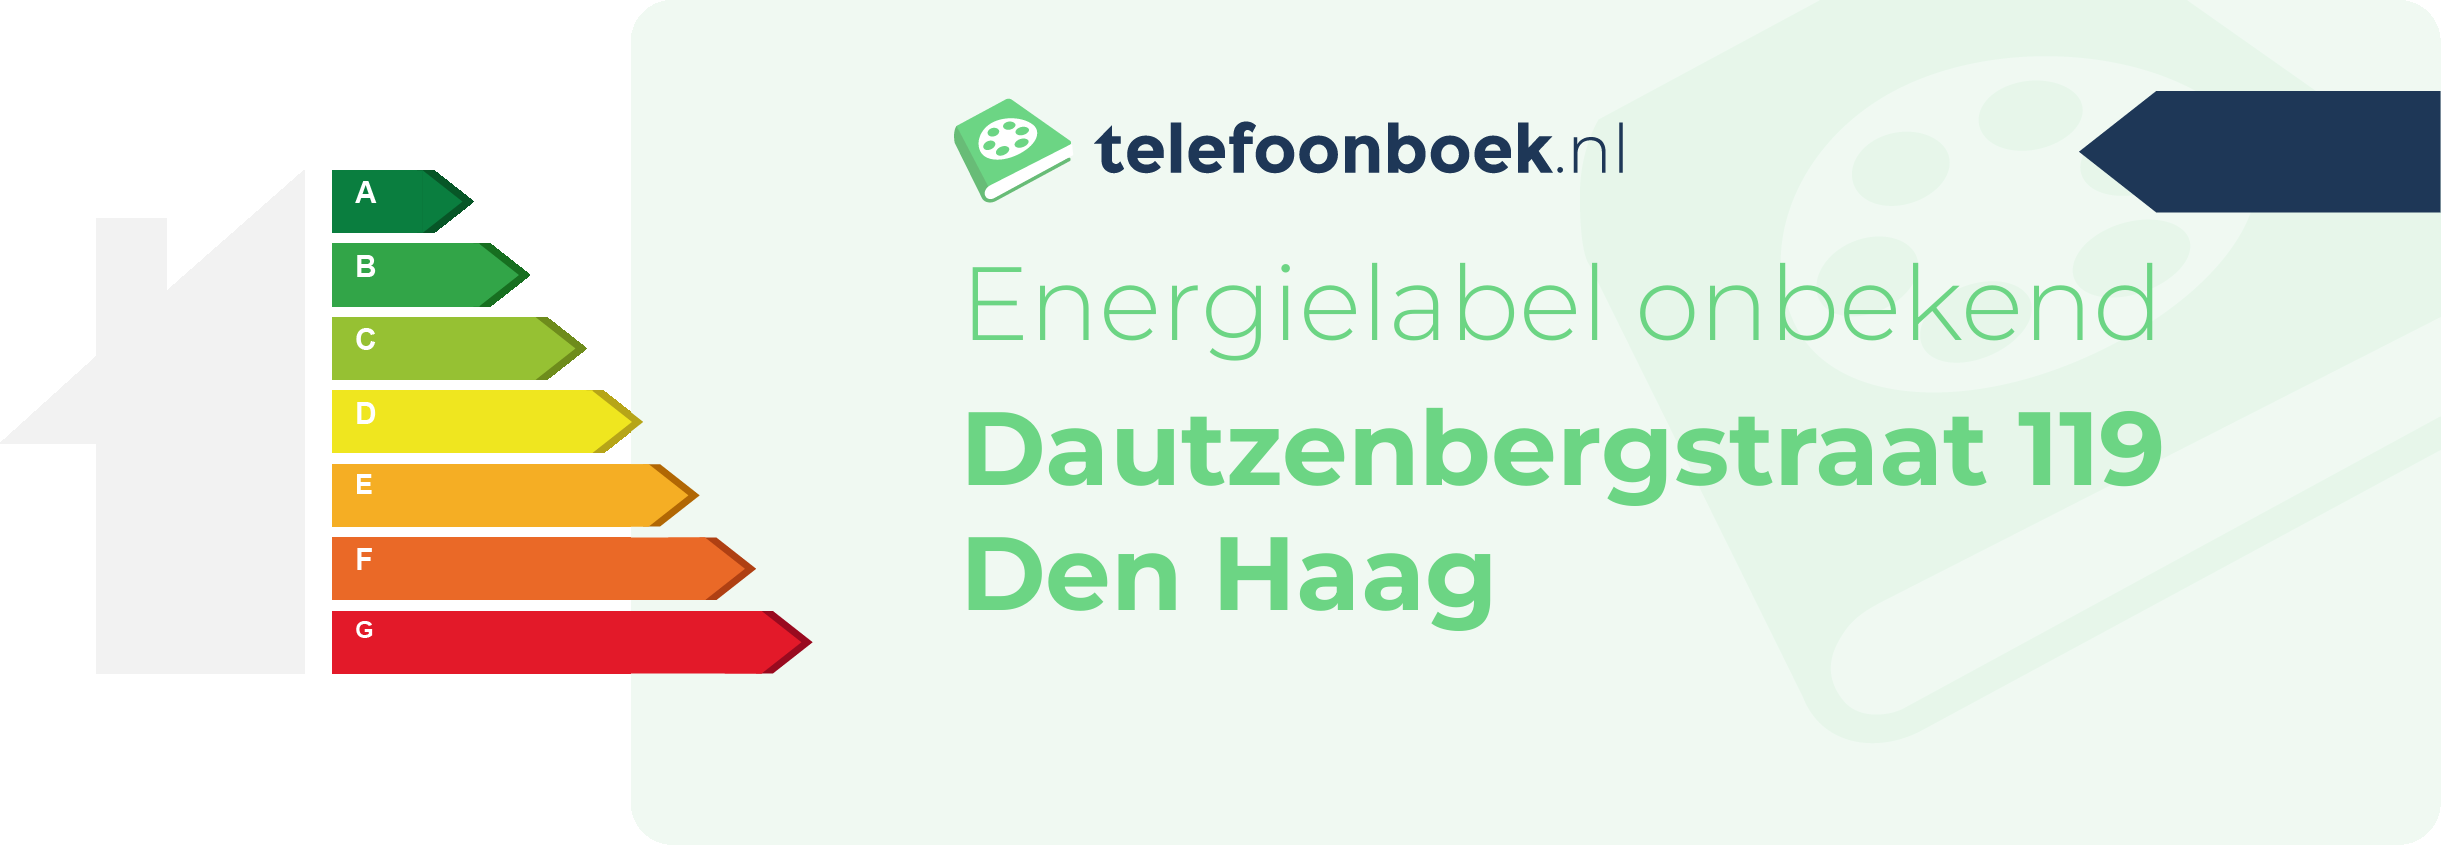 Energielabel Dautzenbergstraat 119 Den Haag